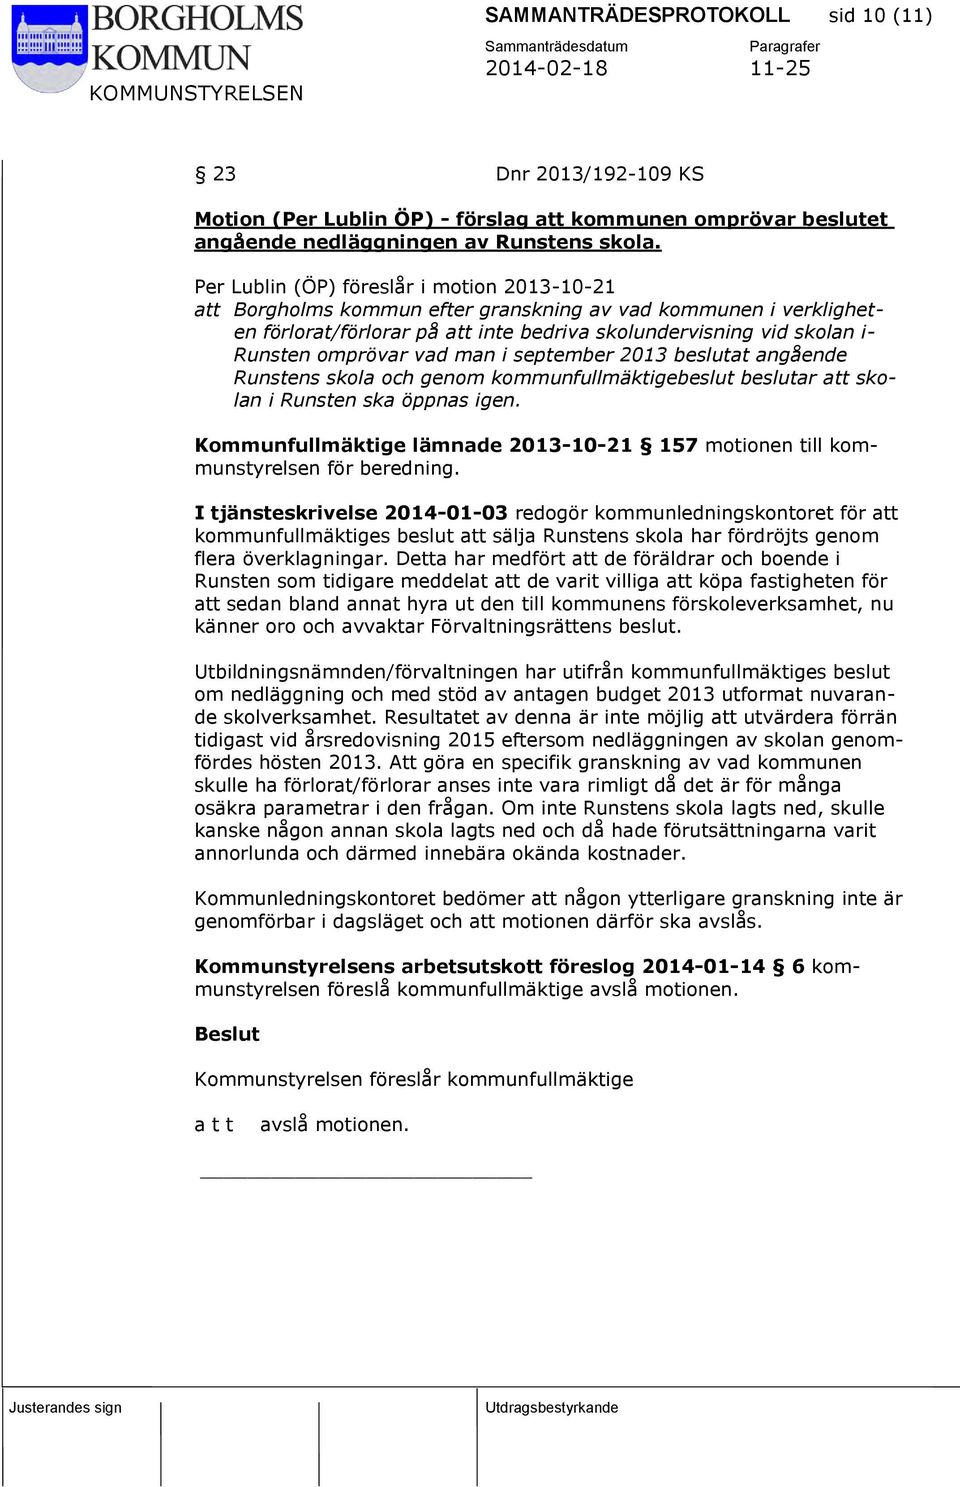 vad man i september 2013 beslutat angående Runstens skola och genom kommunfullmäktigebeslut beslutar att skolan i Runsten ska öppnas igen.